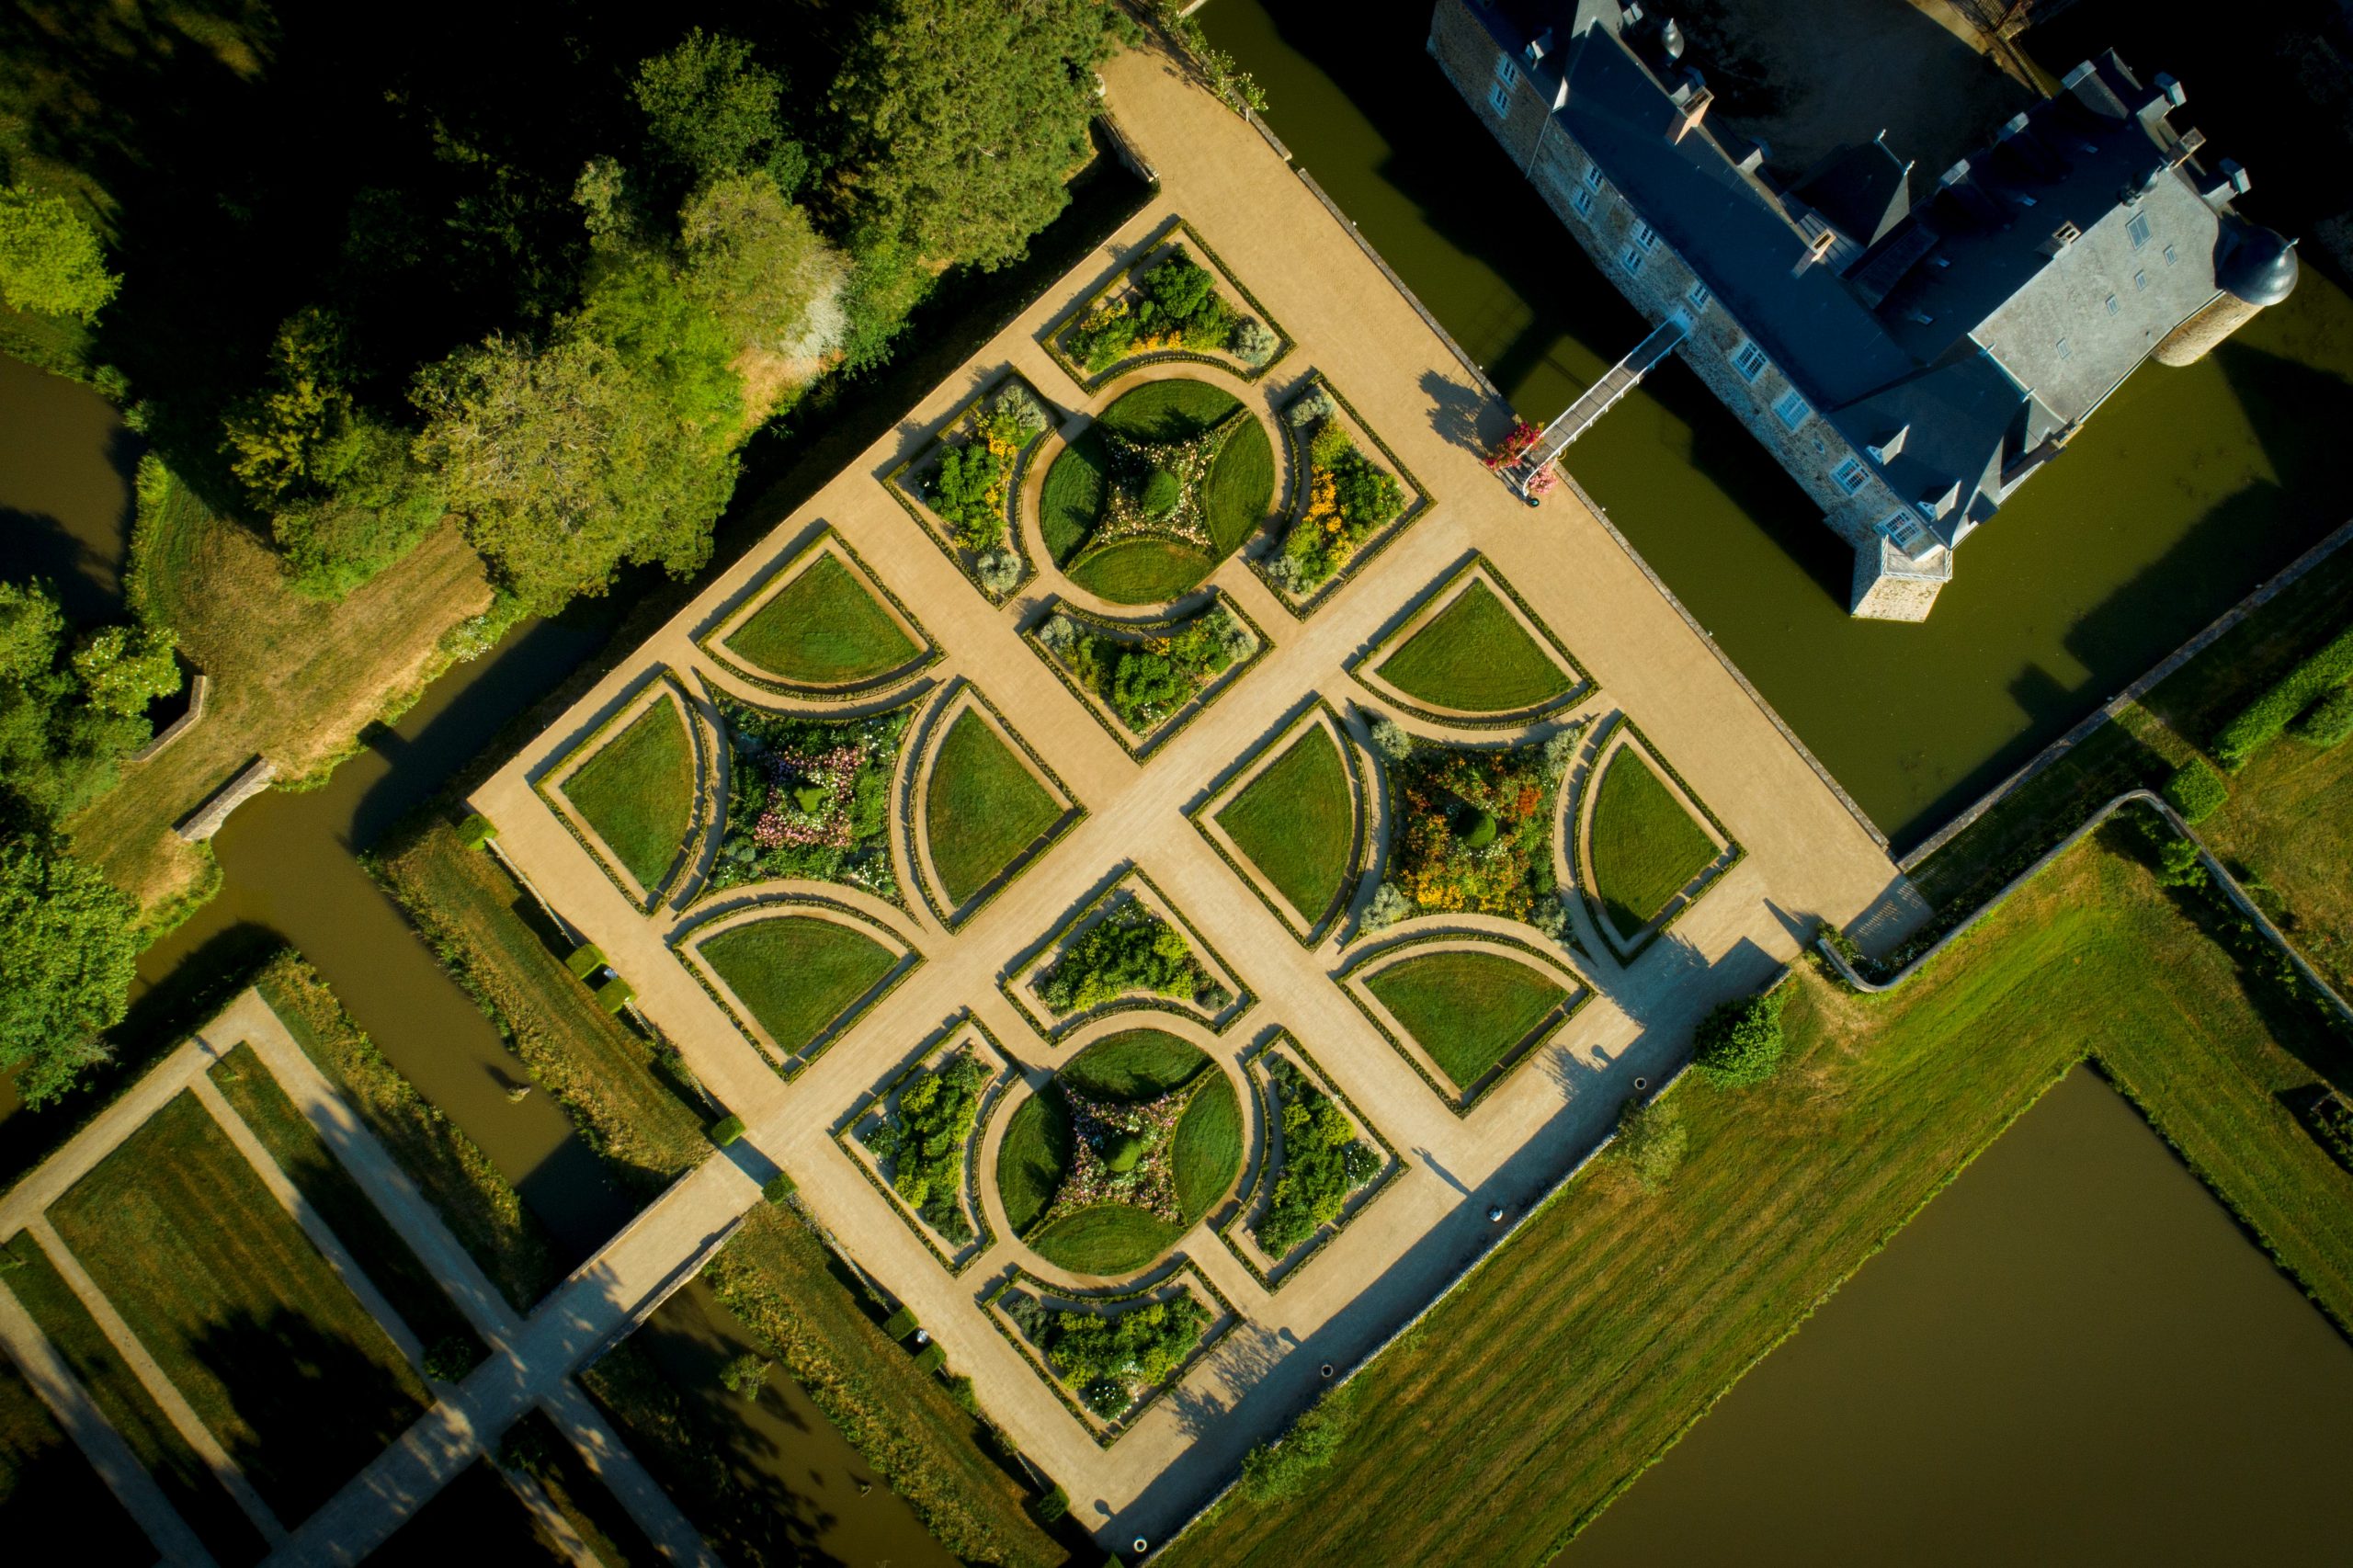 Visiter le Château des Arcis avec le Passeport des Demeures Historiques